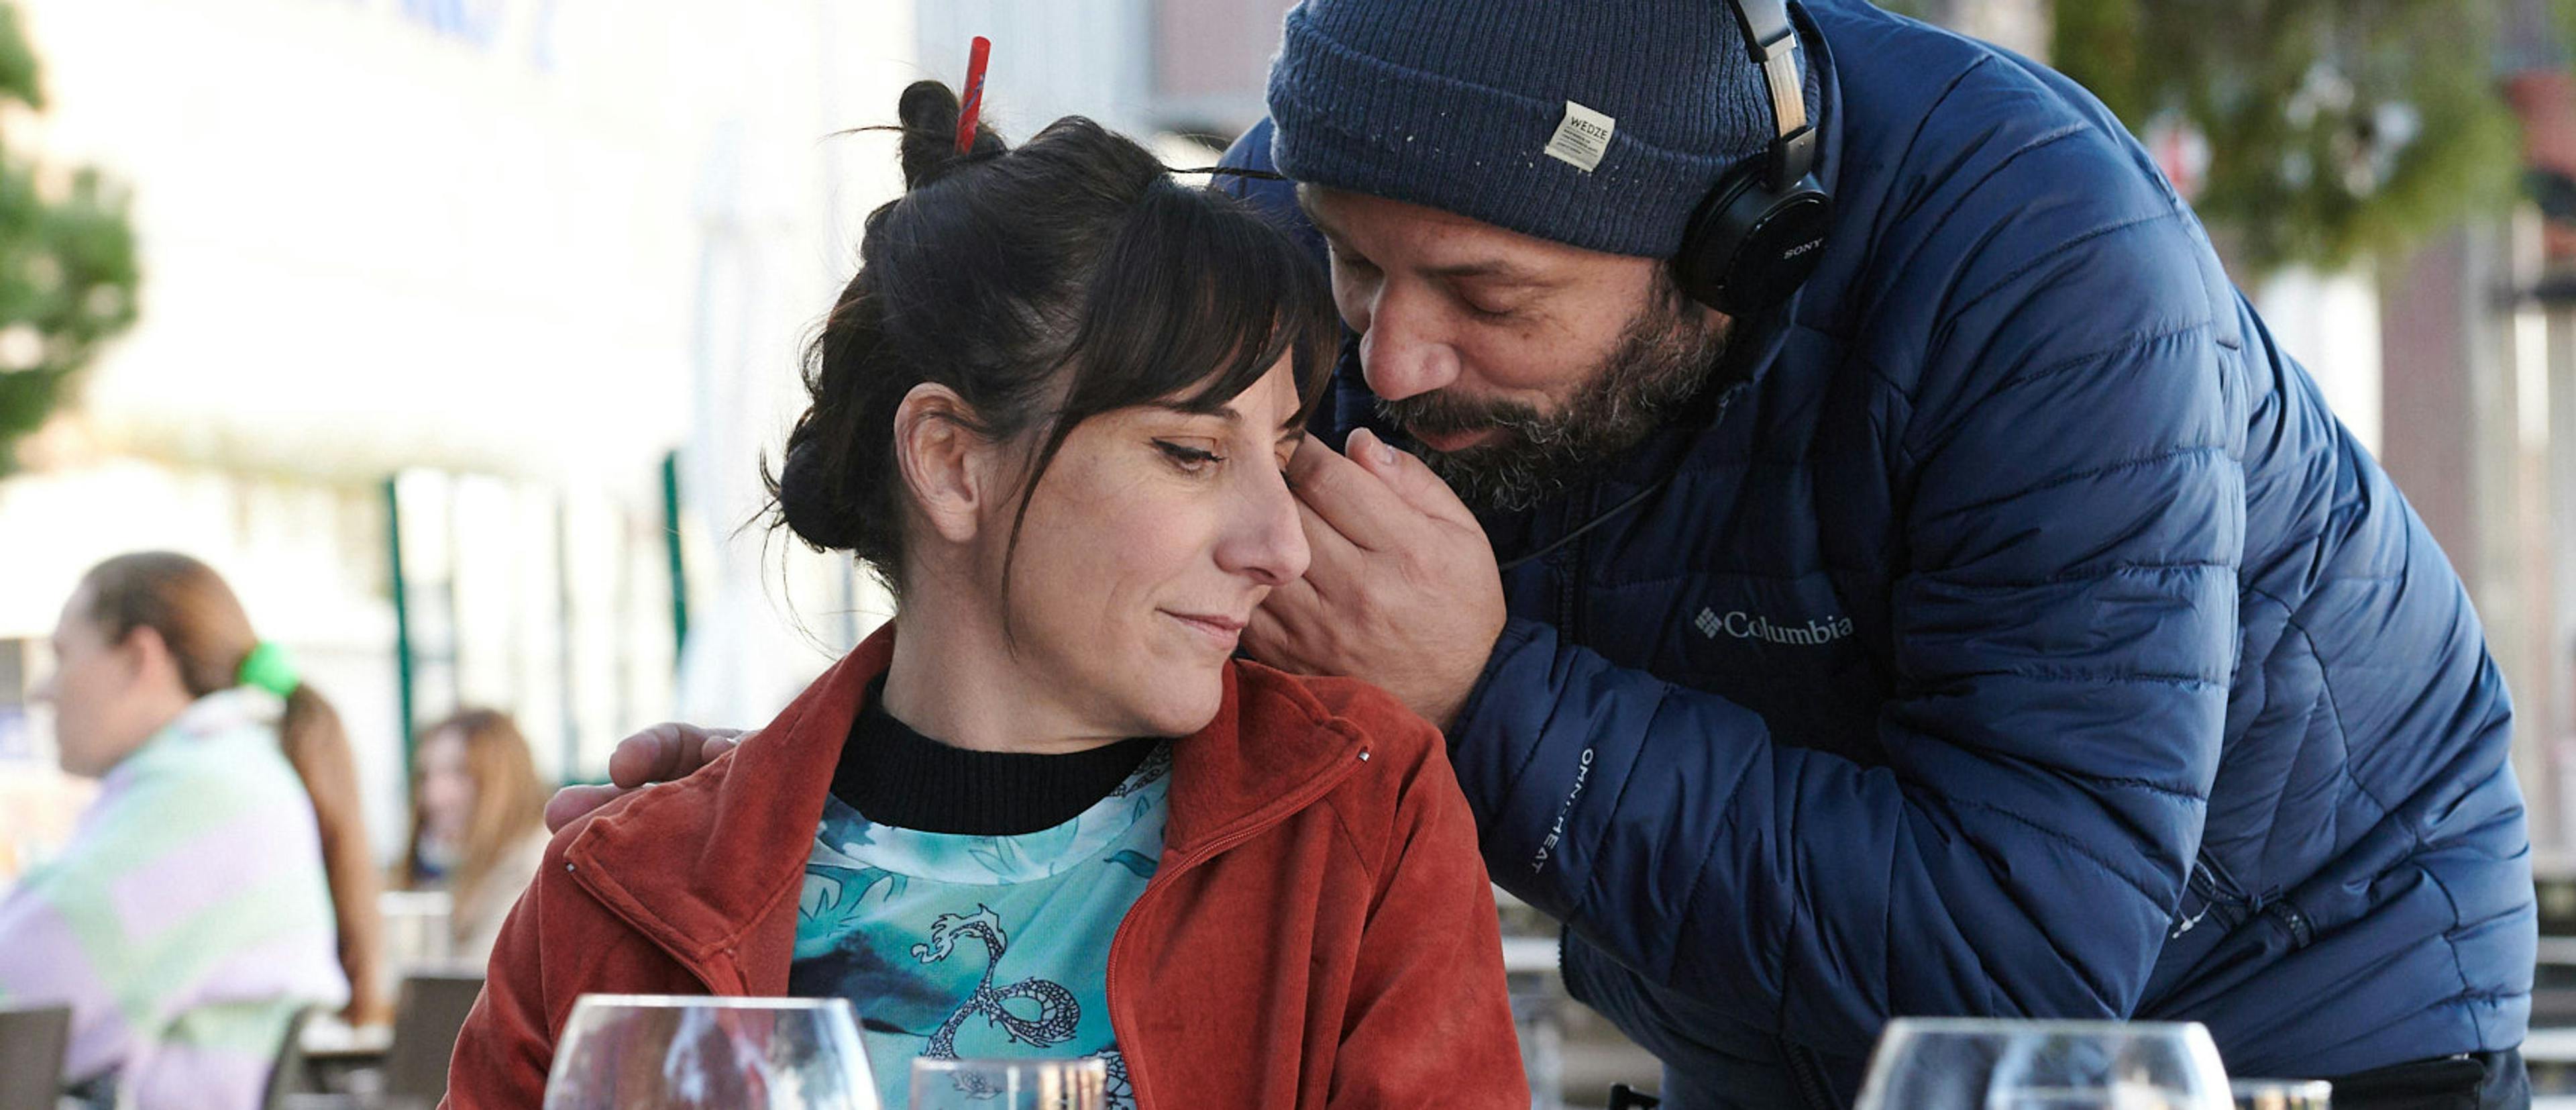 El director Antonio Méndez Esparza da instrucciones a la actriz Malena Alterio en el rodaje de 'Que nadie duerma'